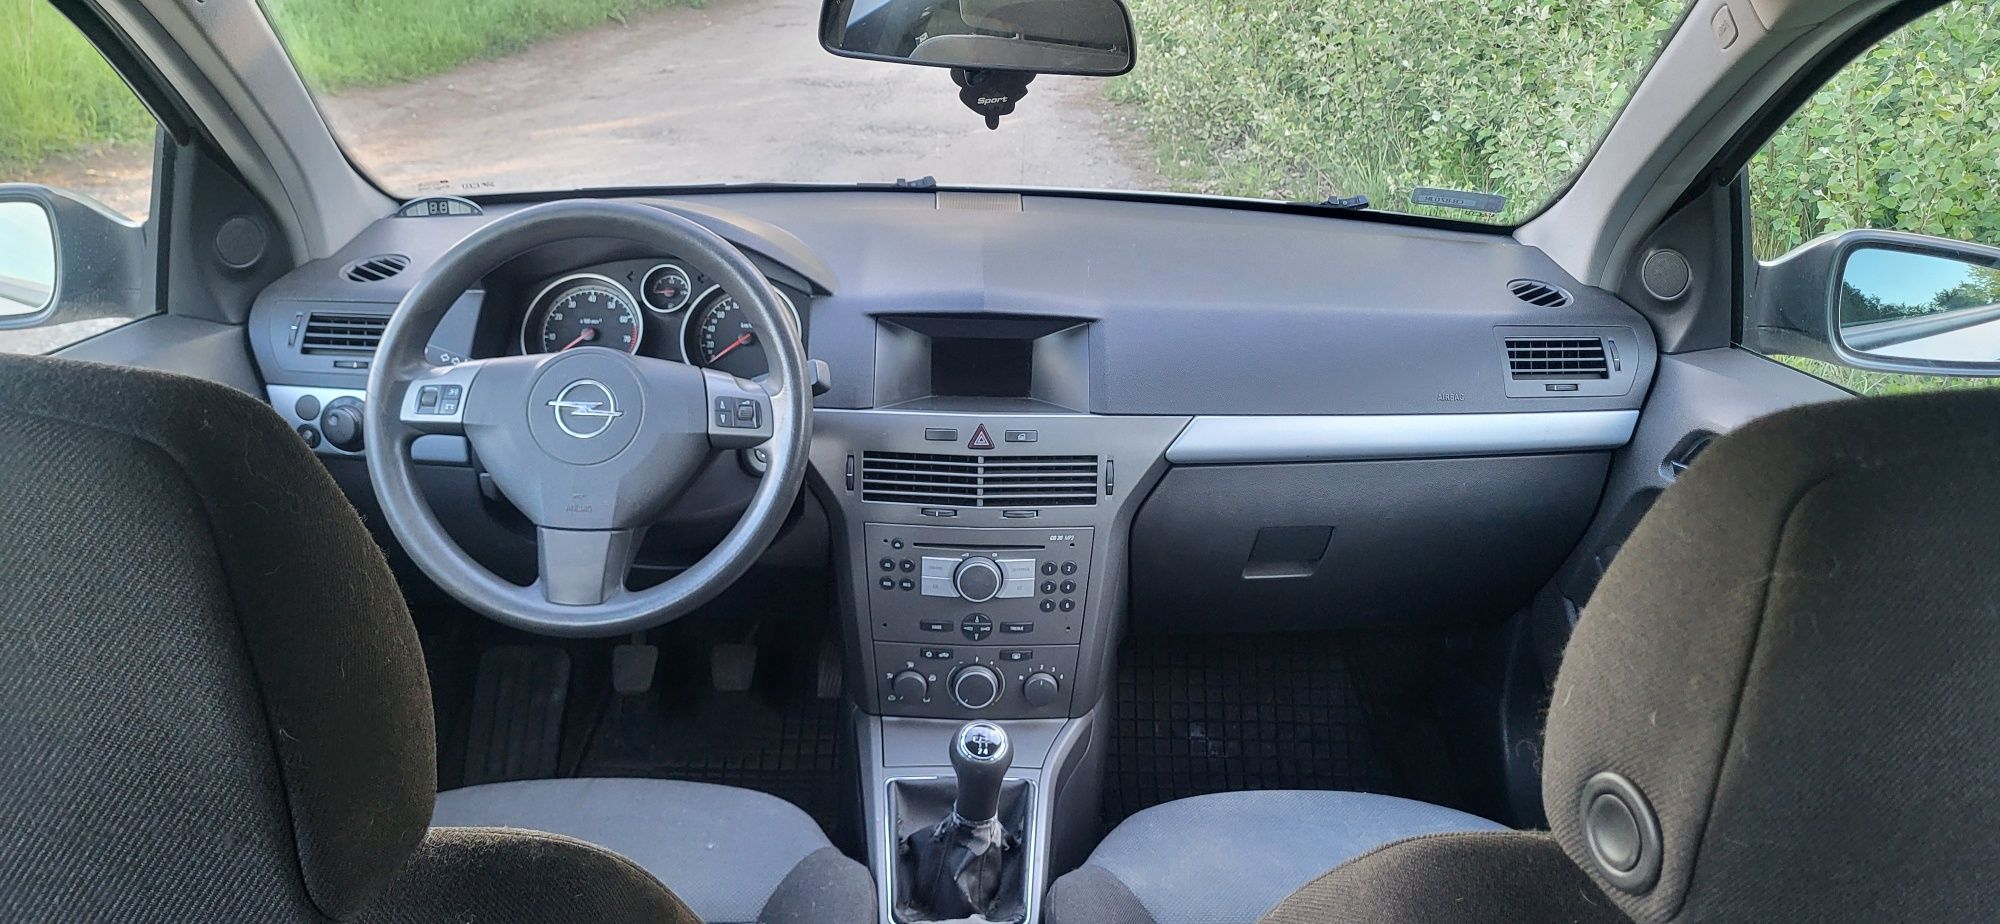 Opel Astra 3 H kombi 1.4 benzyna klimatyzacja alusy 17